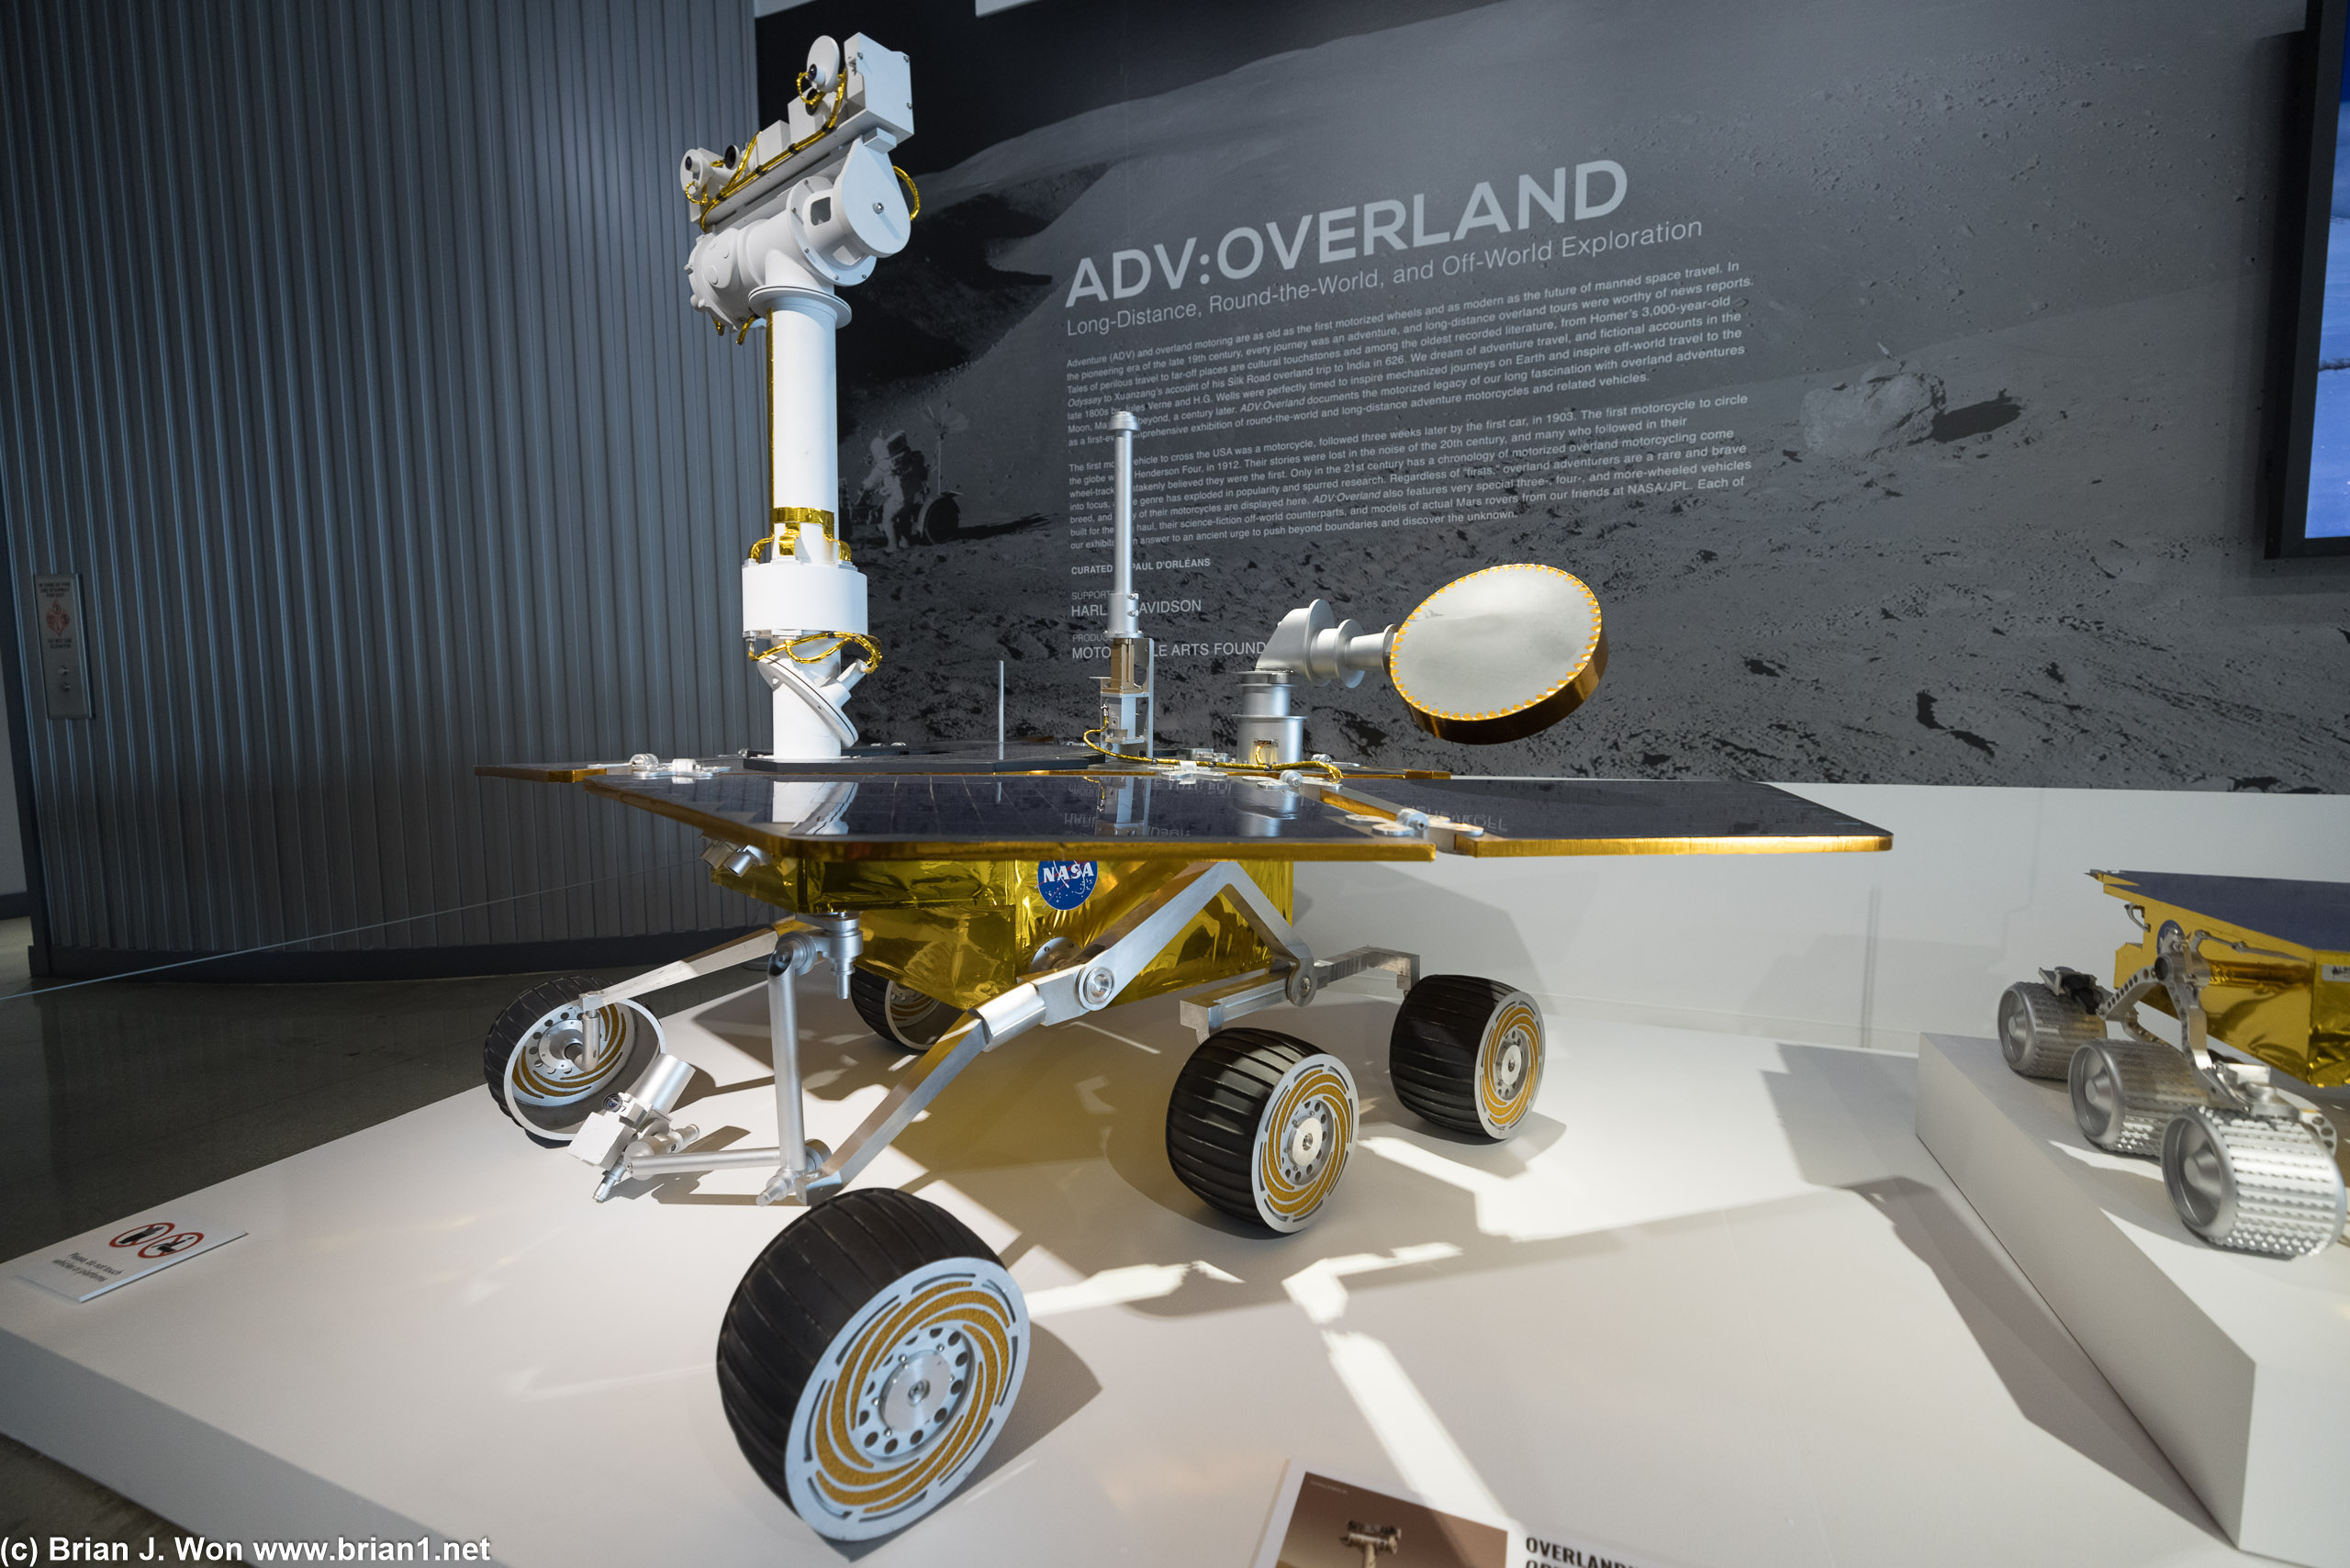 Mars Rover Opportunity model.